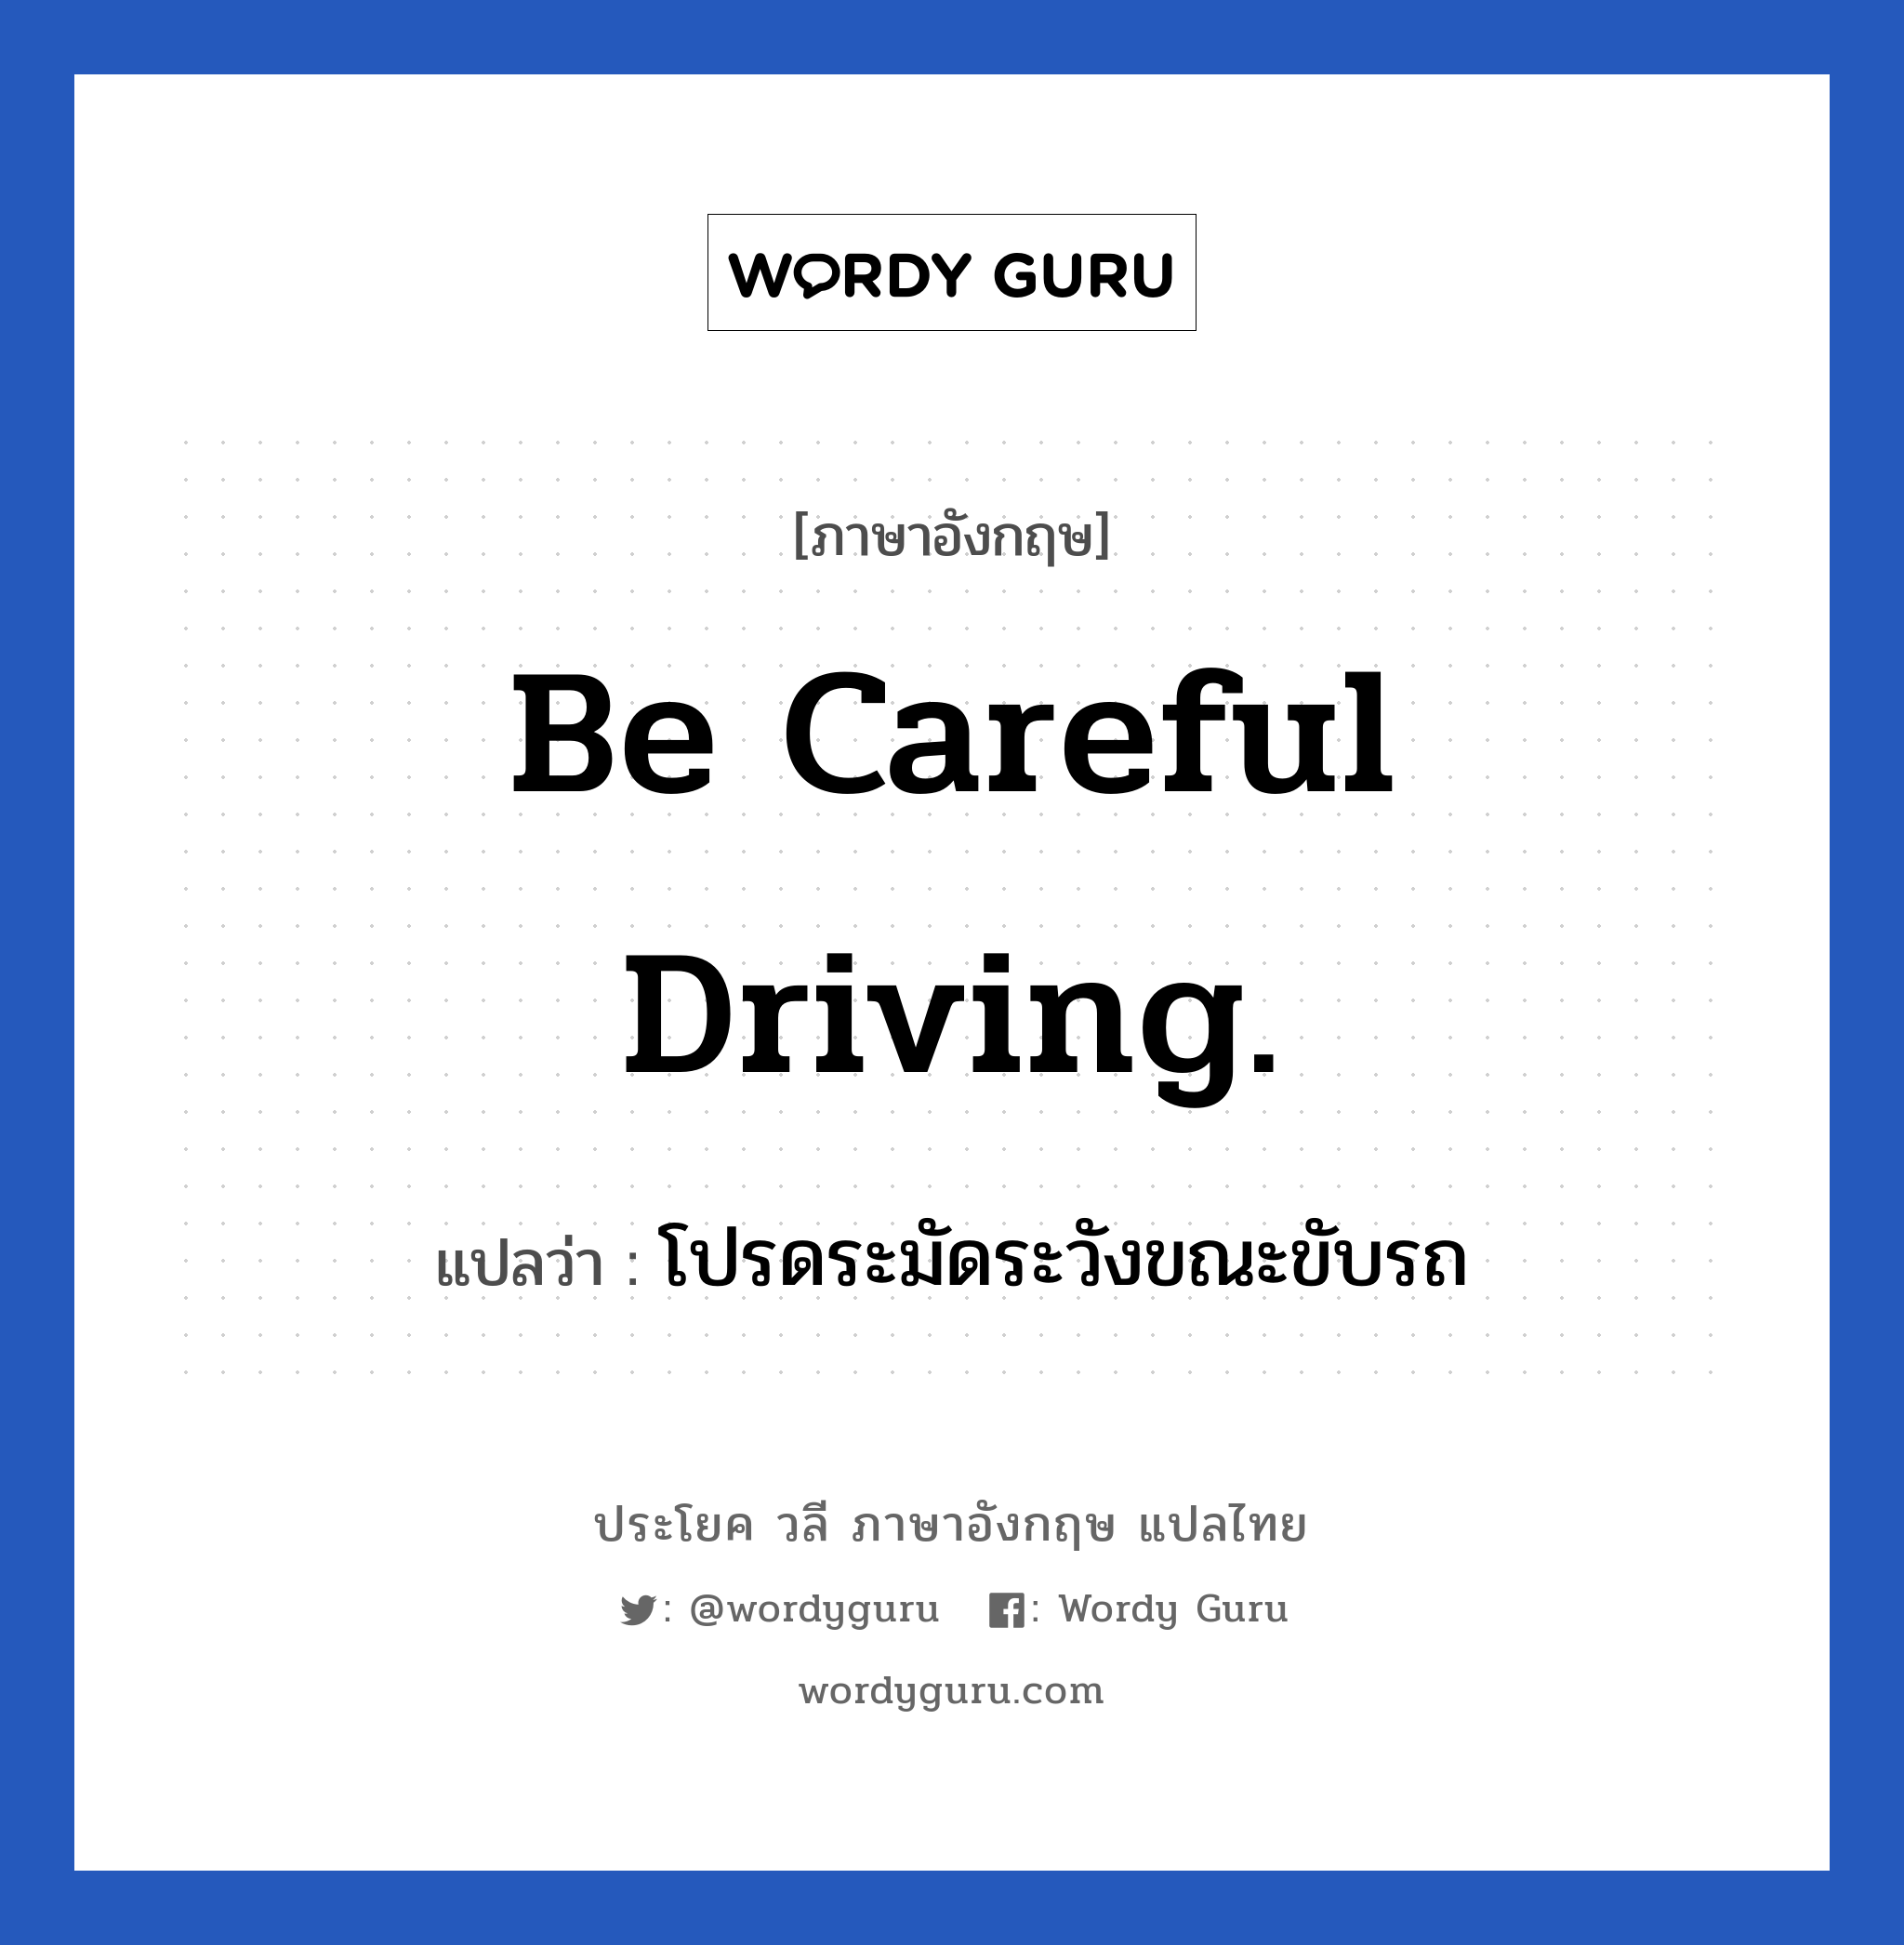 โปรดระมัดระวังขณะขับรถ ภาษาอังกฤษ?, วลีภาษาอังกฤษ โปรดระมัดระวังขณะขับรถ แปลว่า Be careful driving.